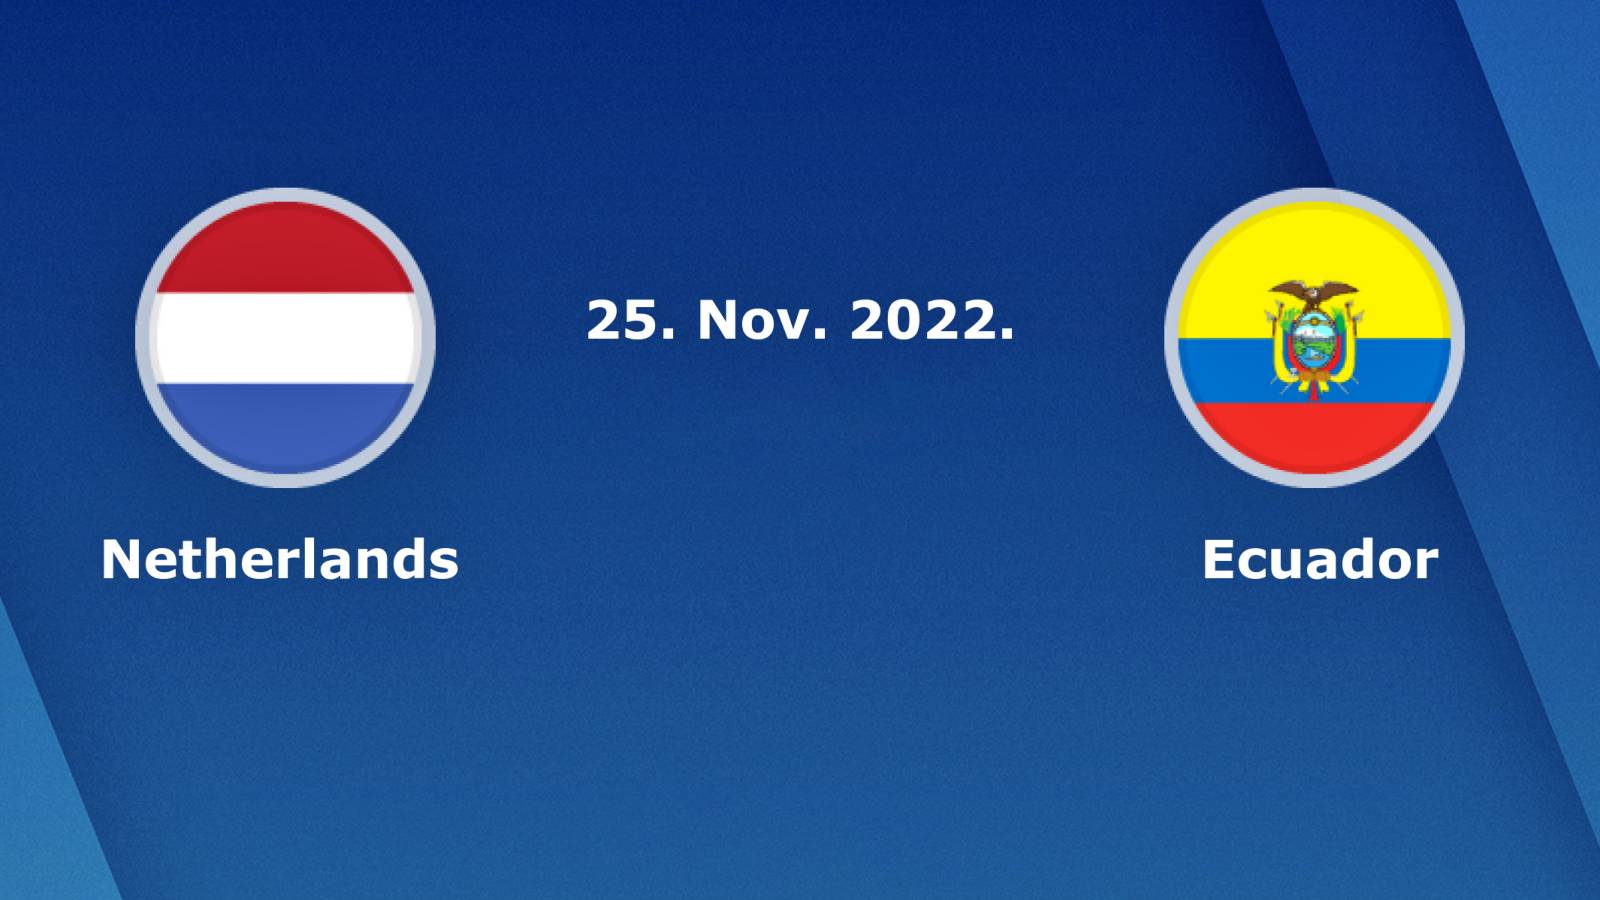 NIEDERLANDE – ECUADOR LIVE TVR 1 SPIEL WELTMEISTERSCHAFT 2022